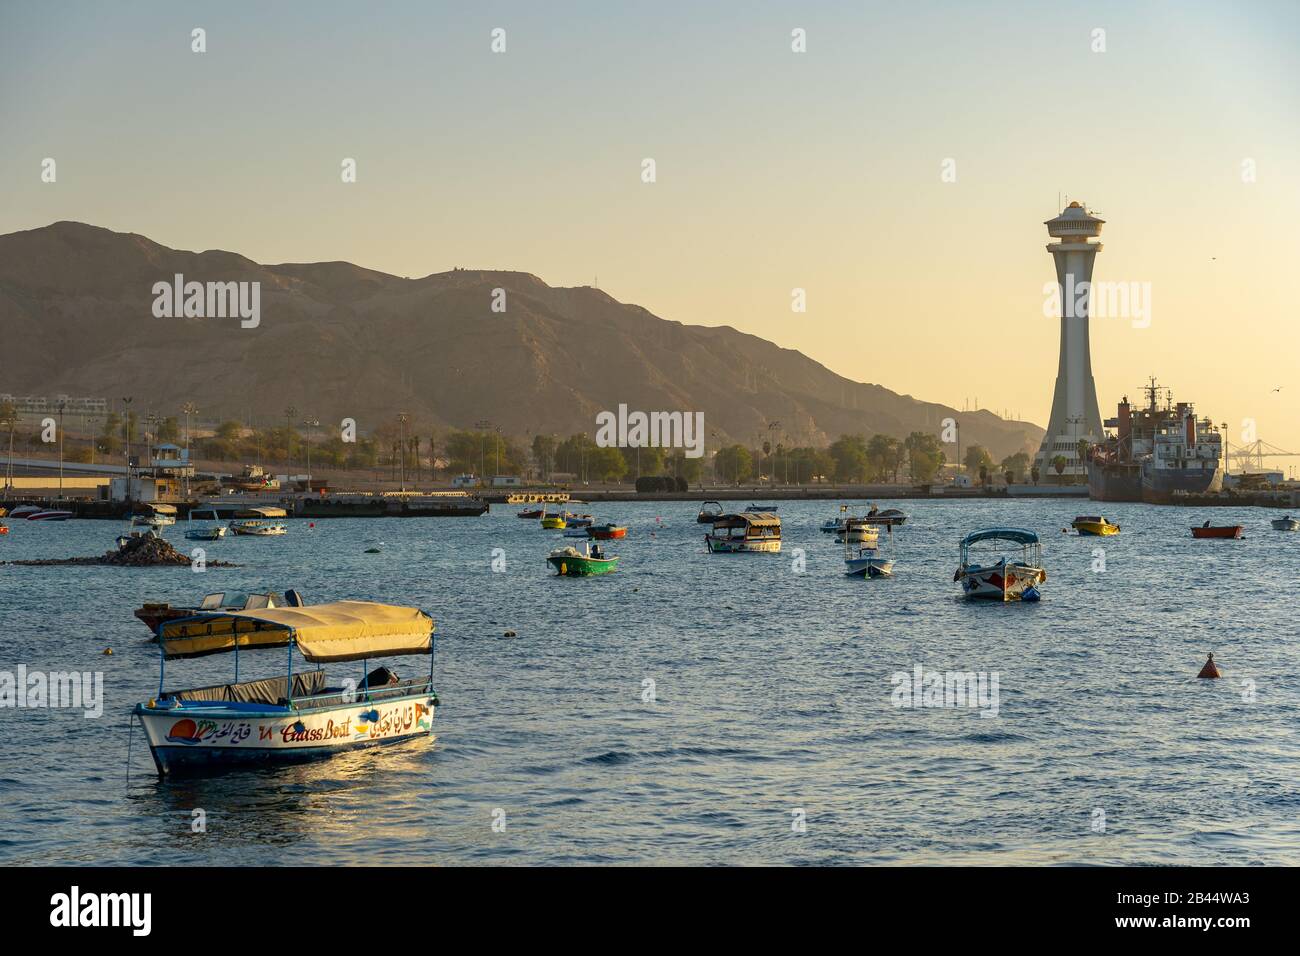 Aqaba, Jordanien - EINE Hafenstadt am Golf von Akaba am Roten Meer, beliebt  zum Schnorcheln und Tauchen Stockfotografie - Alamy